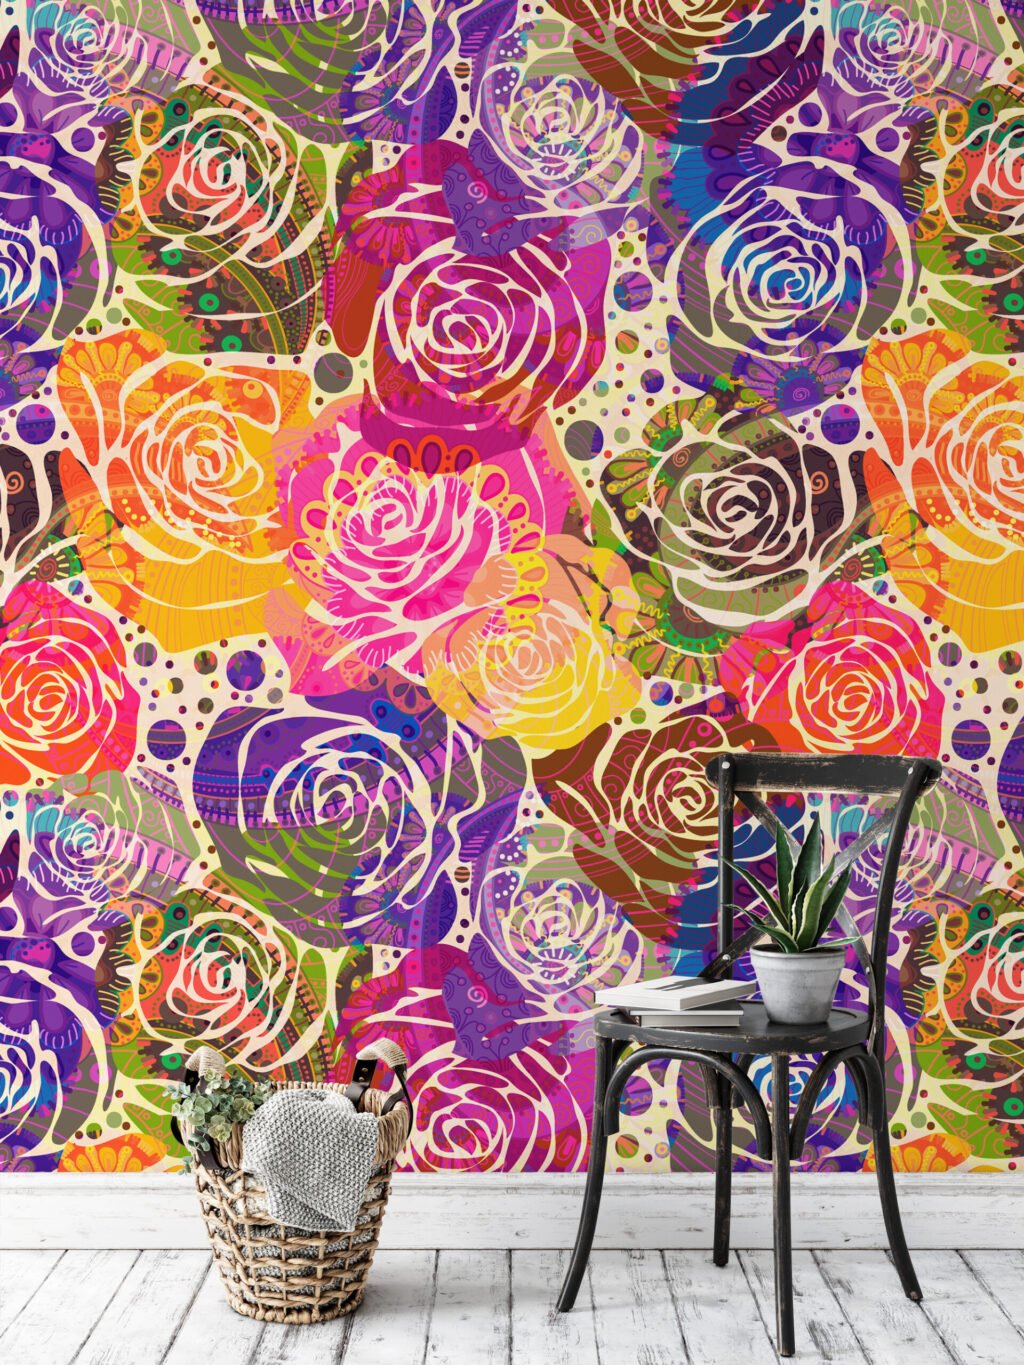 Abstract Renkli Güller Duvar Kağıdı, Canlı Gül Kolajı 3D Duvar Posteri Çiçekli Duvar Kağıtları 5